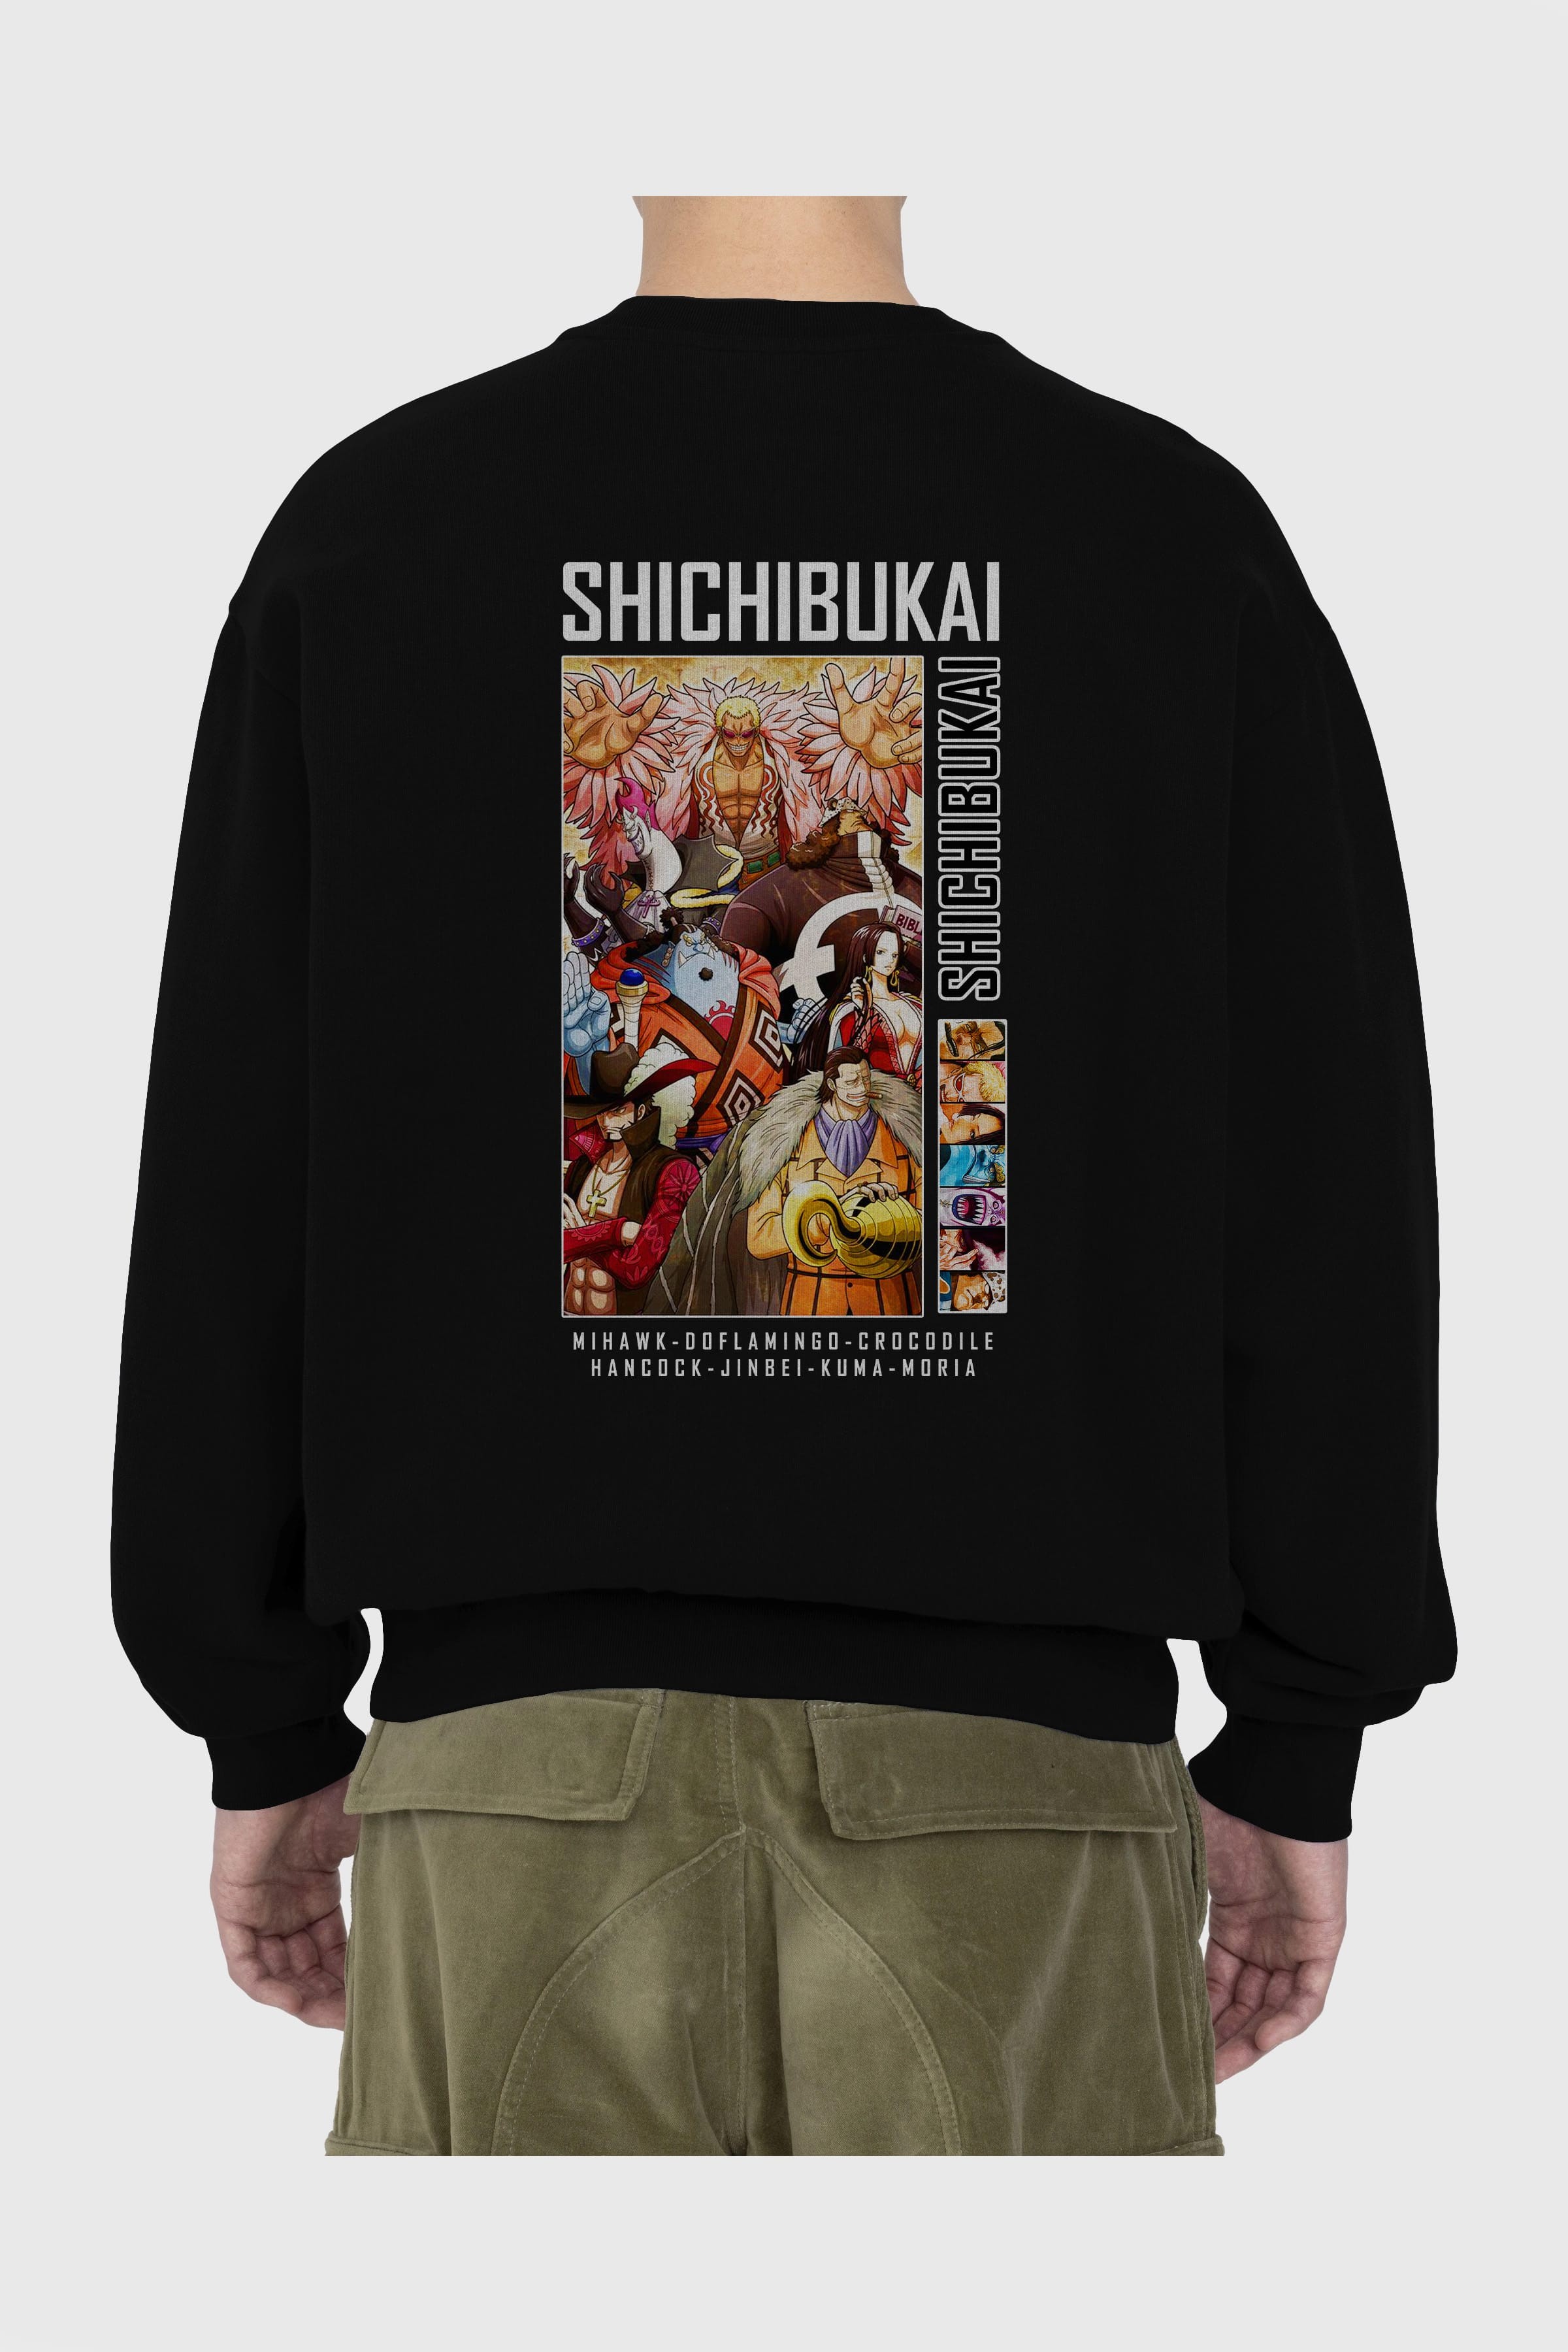 Shichibukai Arka Baskılı Anime Oversize Sweatshirt Erkek Kadın Unisex